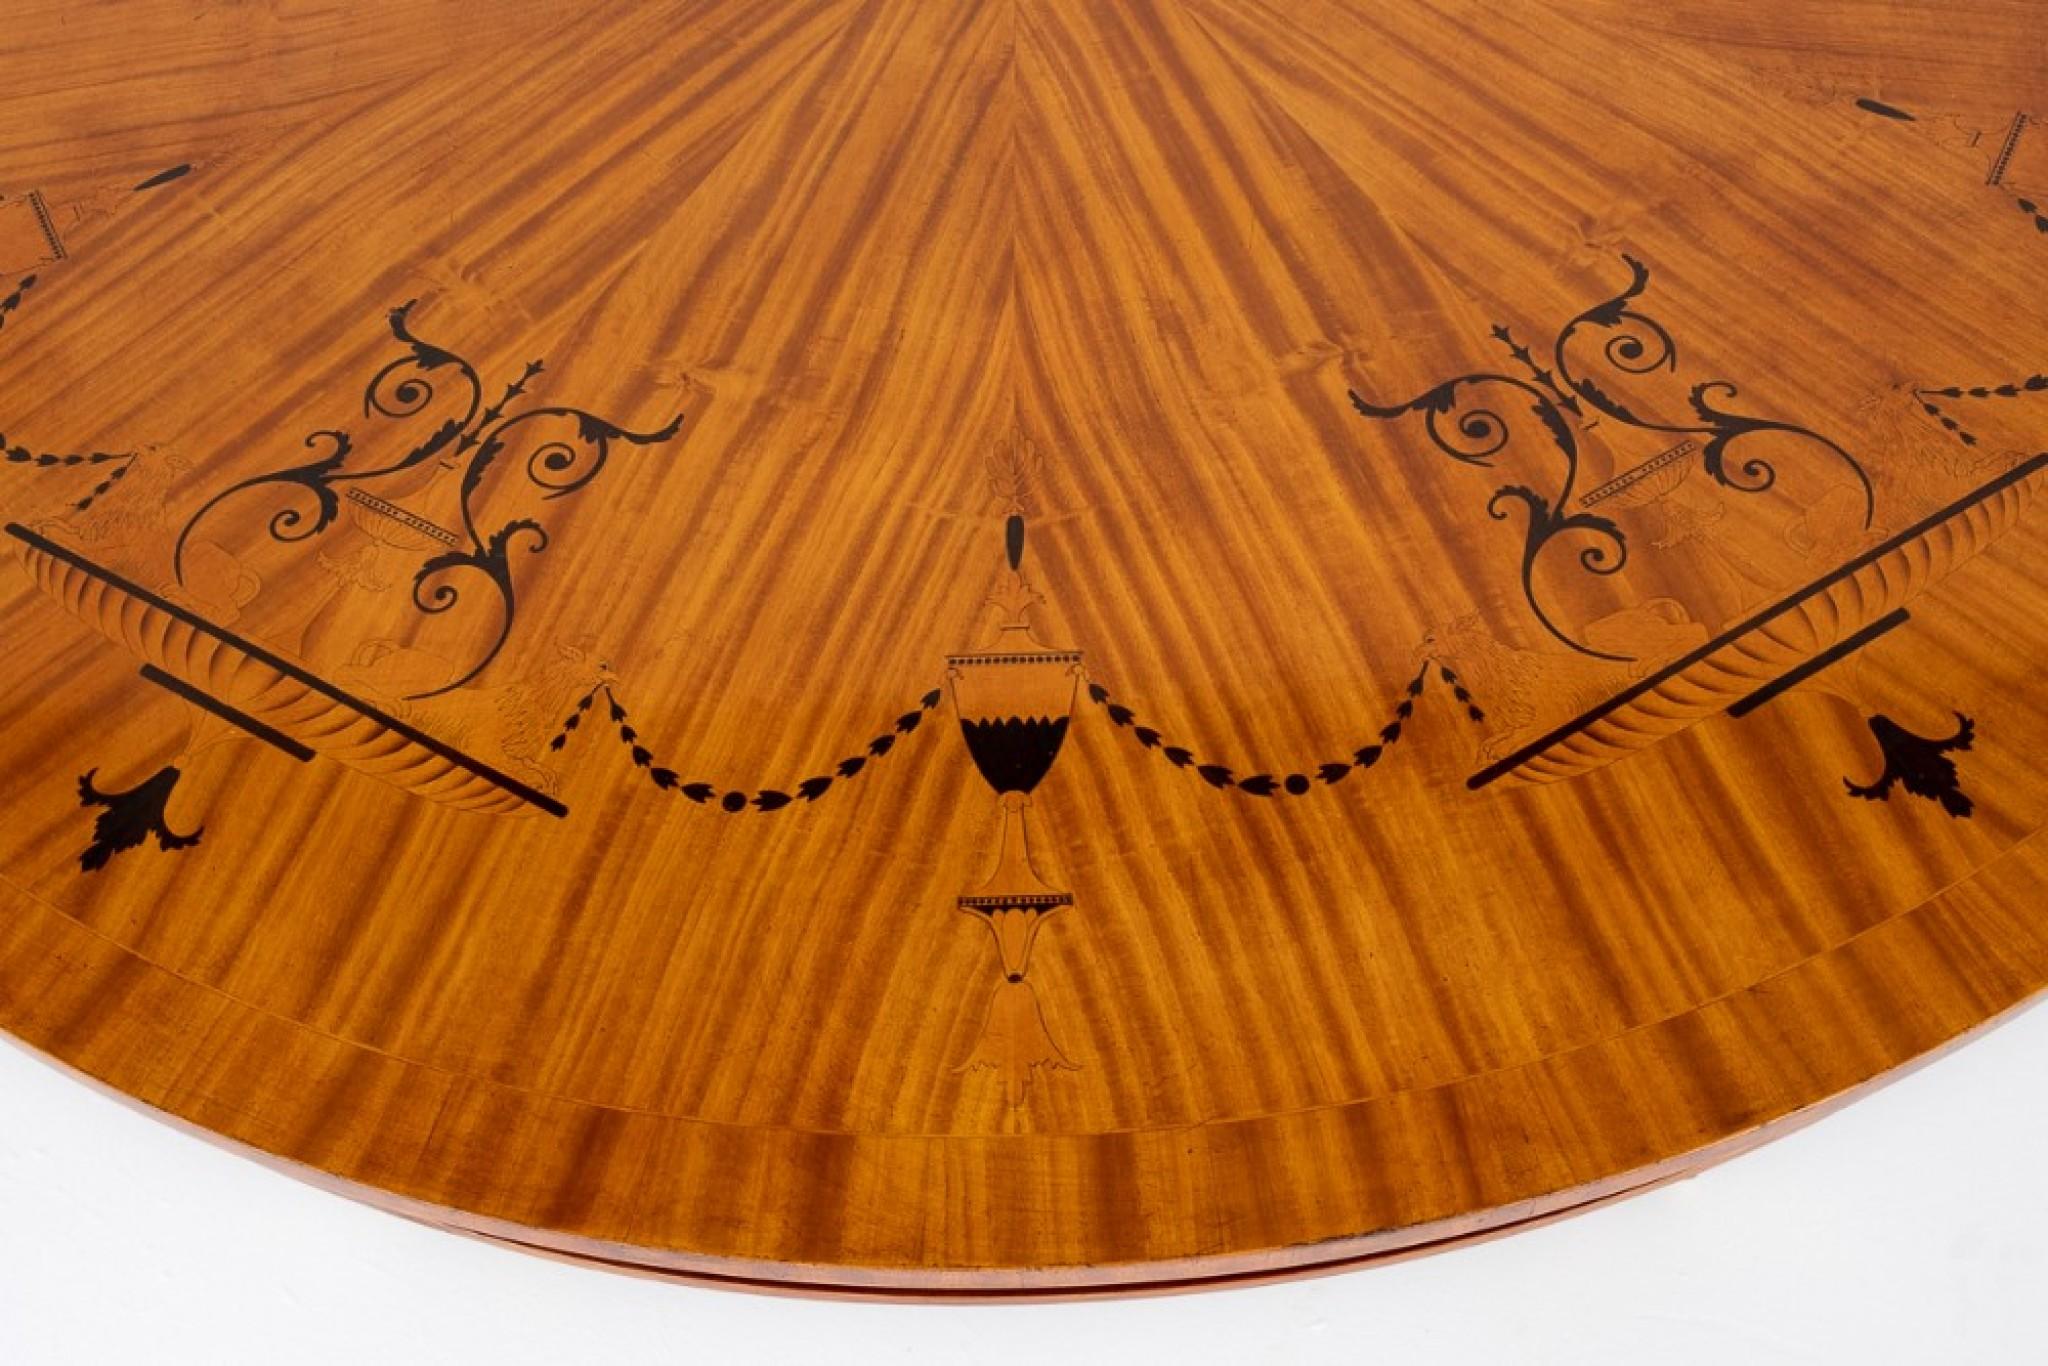 Regency-Revival-Mitteltisch aus Satinholz.
CIRCA 1900
Die Tischplatte ist mit segmentierten Satinholzfurnieren mit stilisierten Ebenholz- und Palisanderintarsien ausgestattet.
Die Basis des Tisches mit Satinholz gefegt Beine mit Palisander